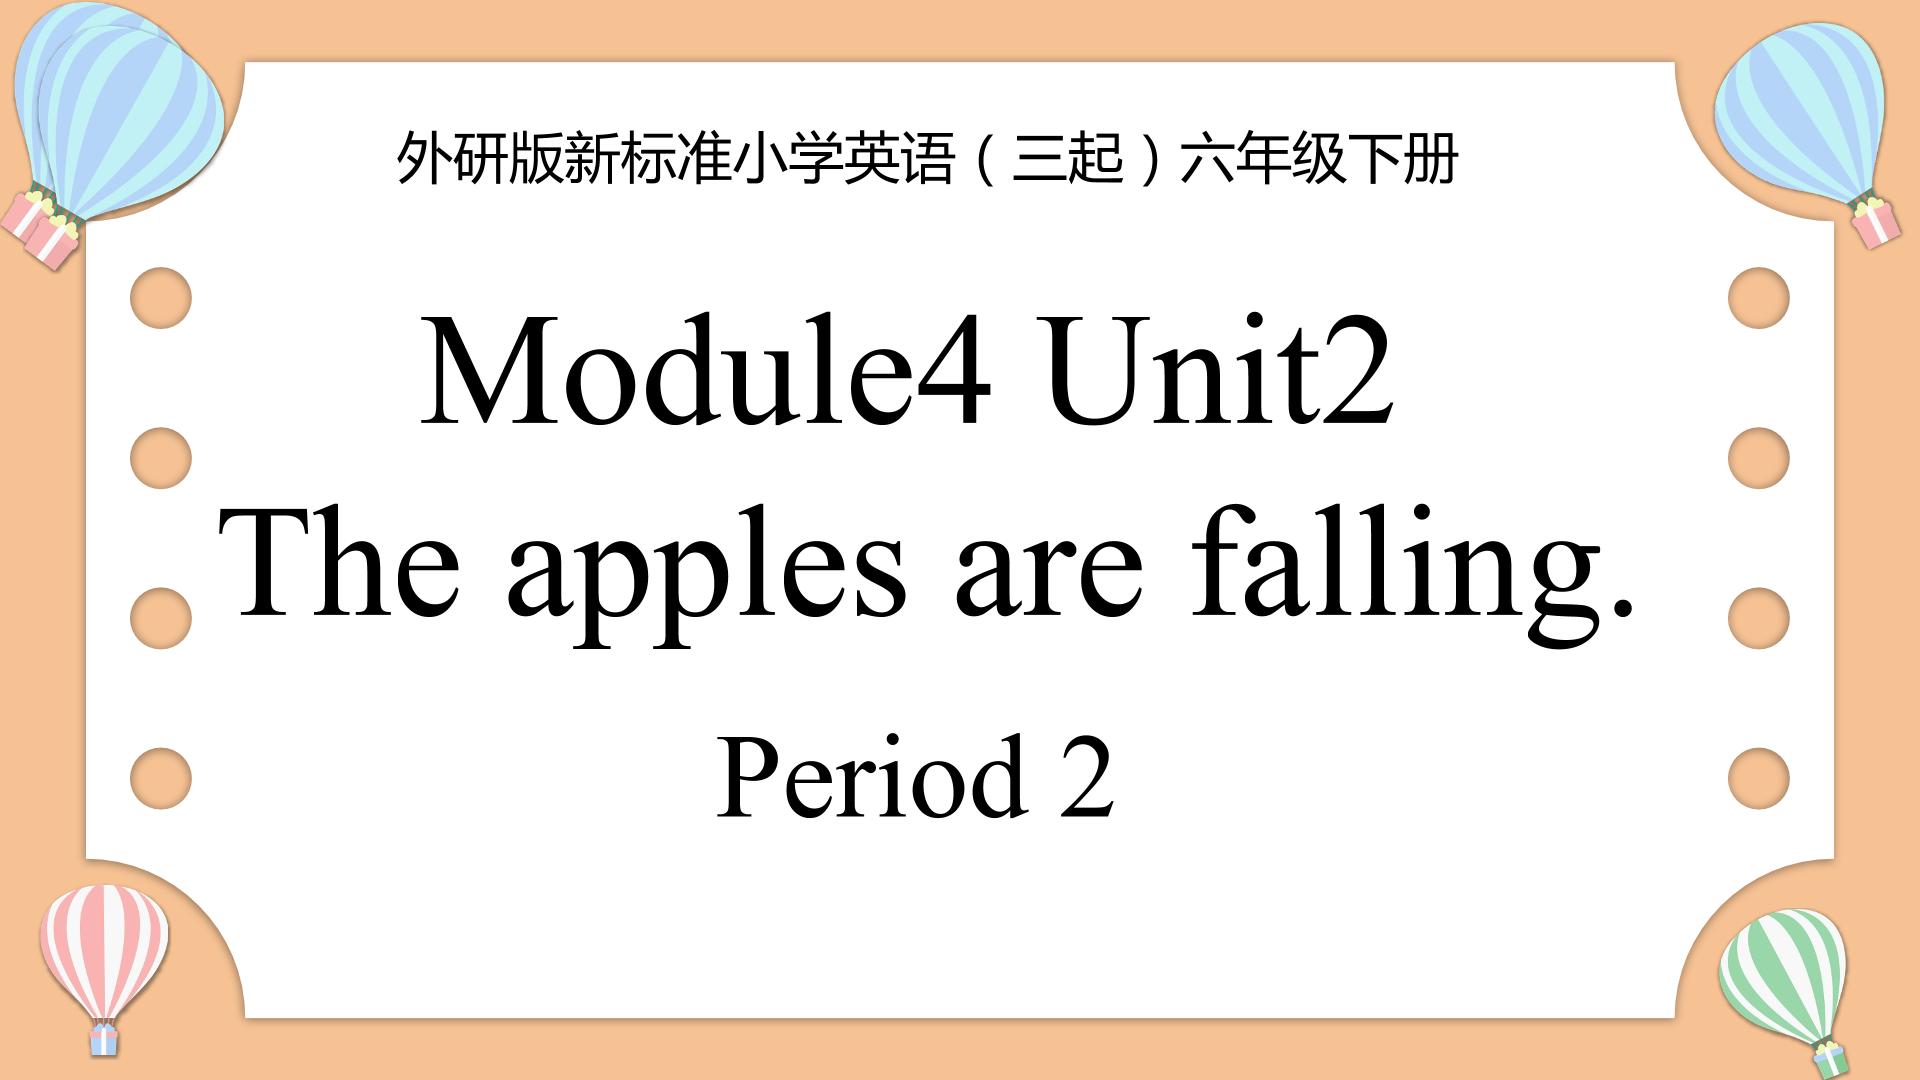 【茂名】M4U2 The apples are falling